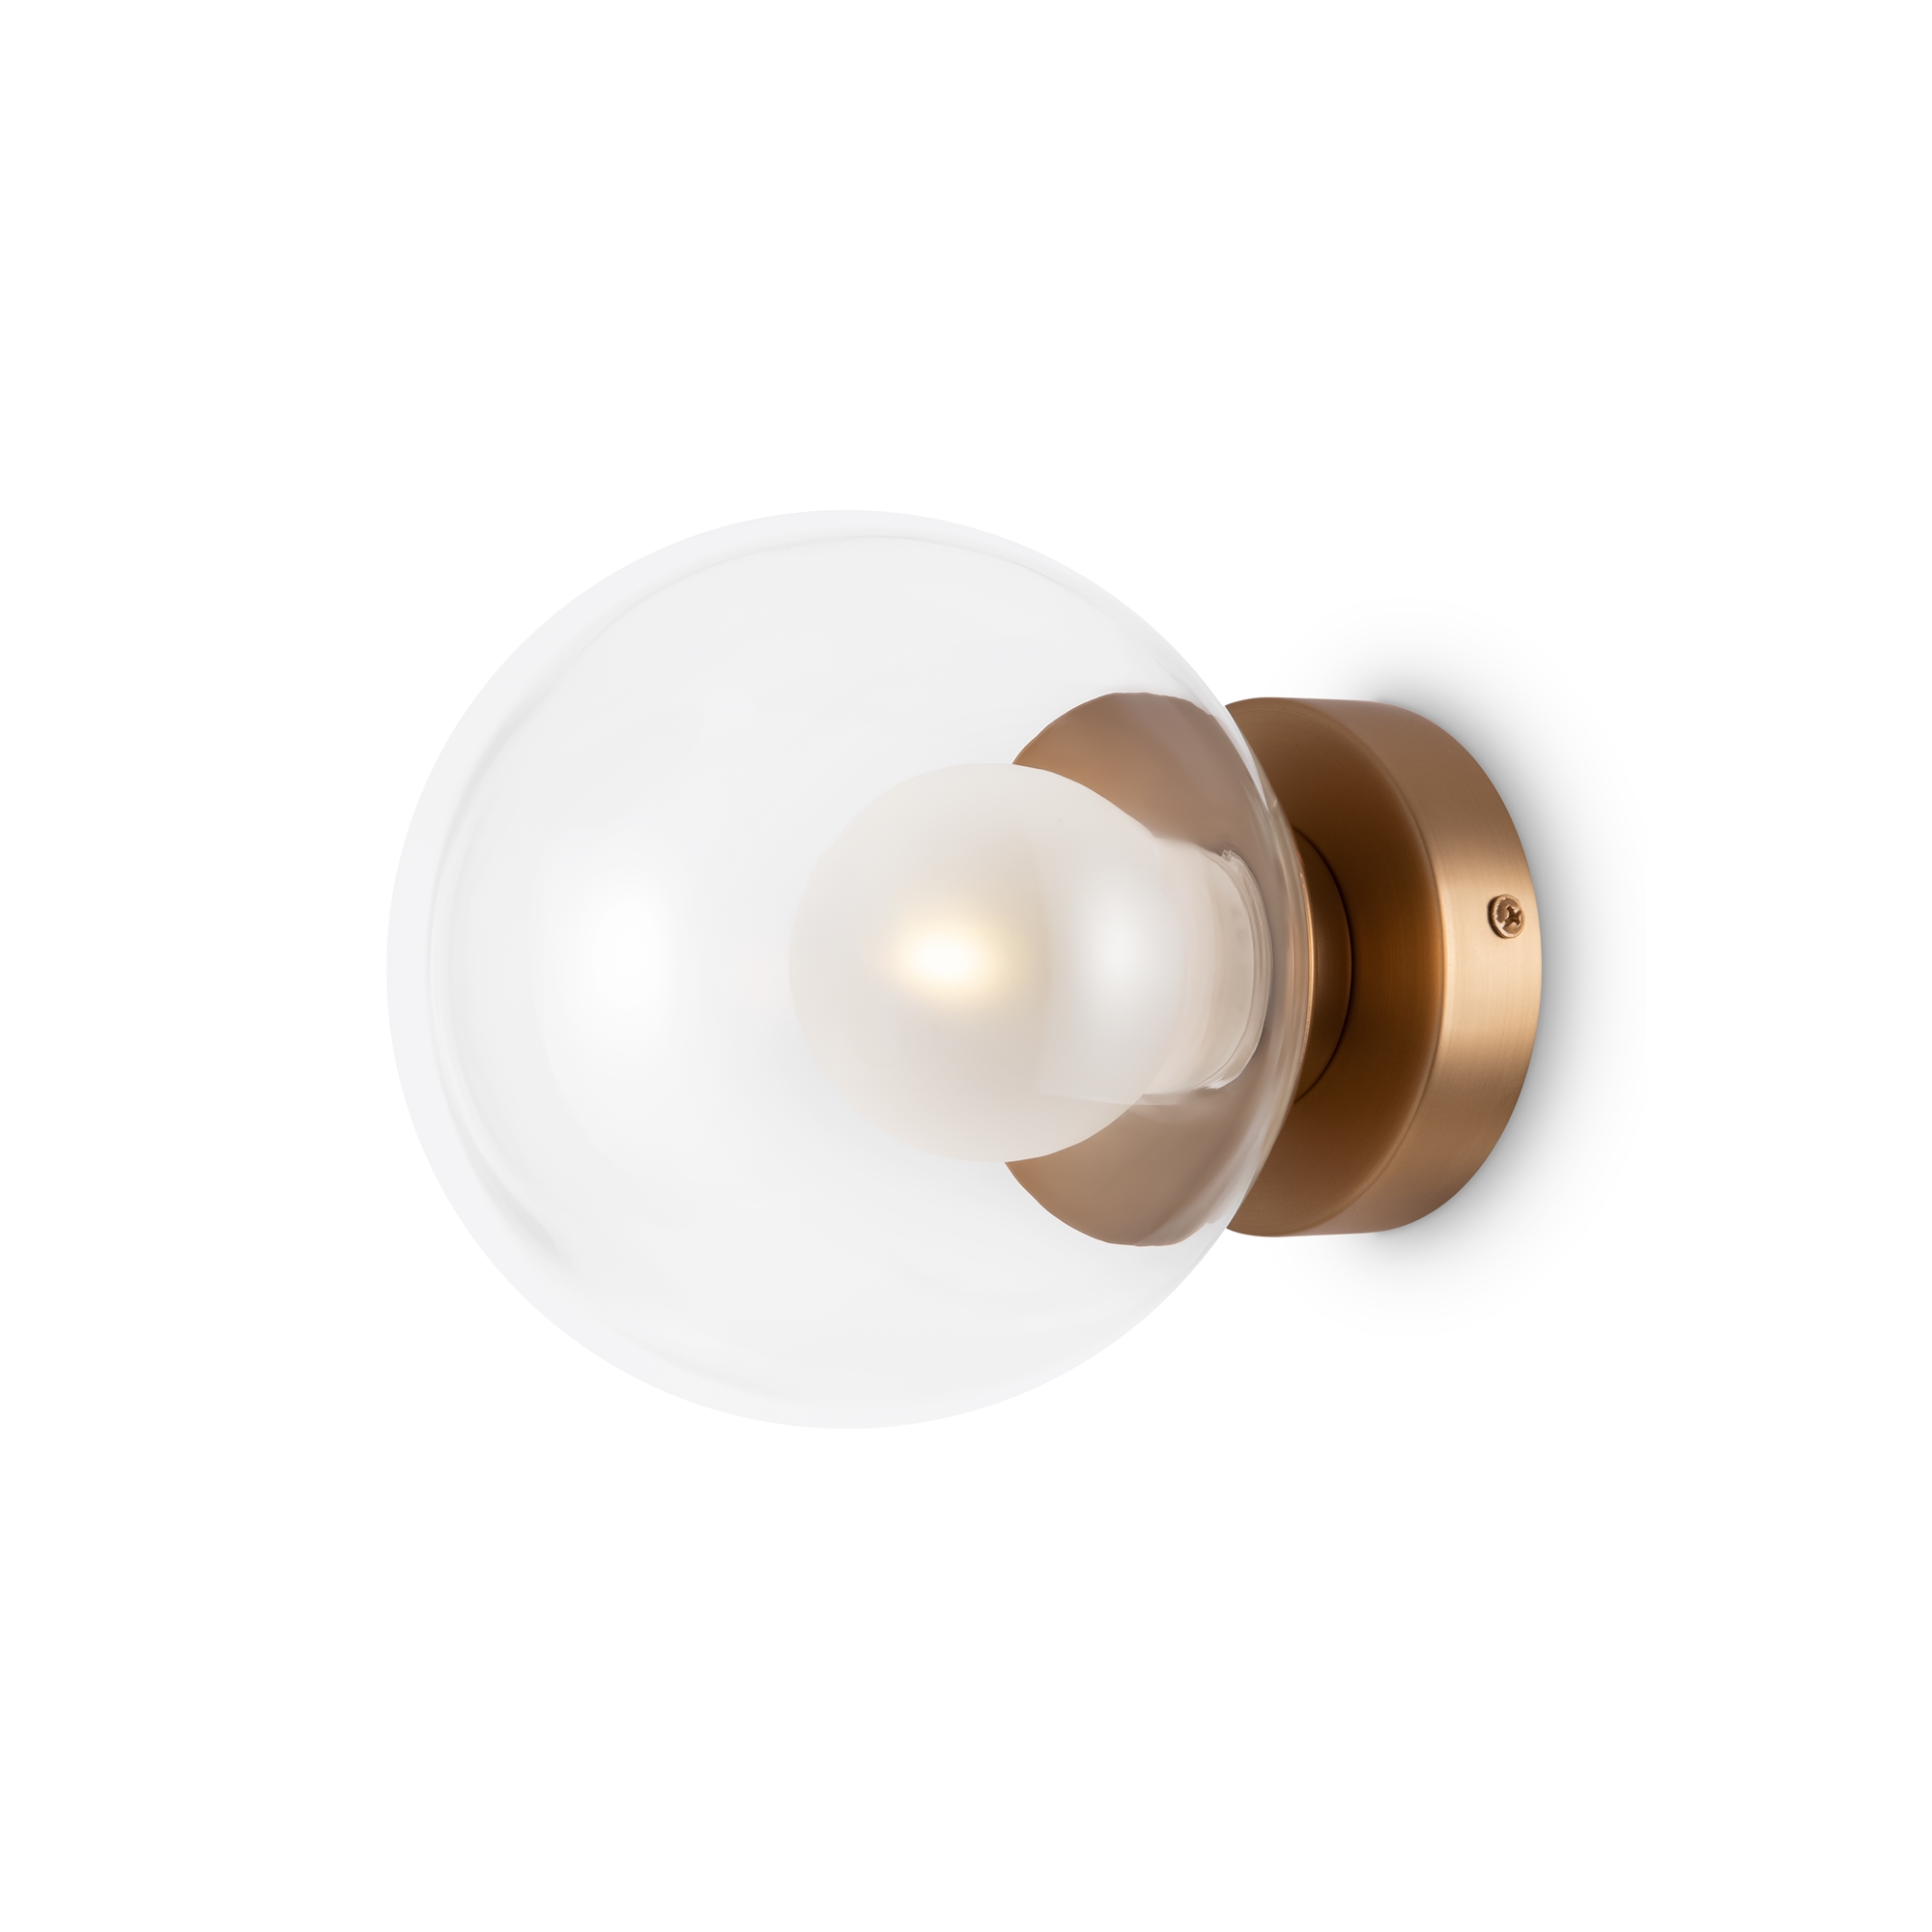 Настенный светильник (бра) Basic form G9х1, MOD521WL-01G1 настенный комплект для смесителя tebo 030090811 вр 20 1 2 f